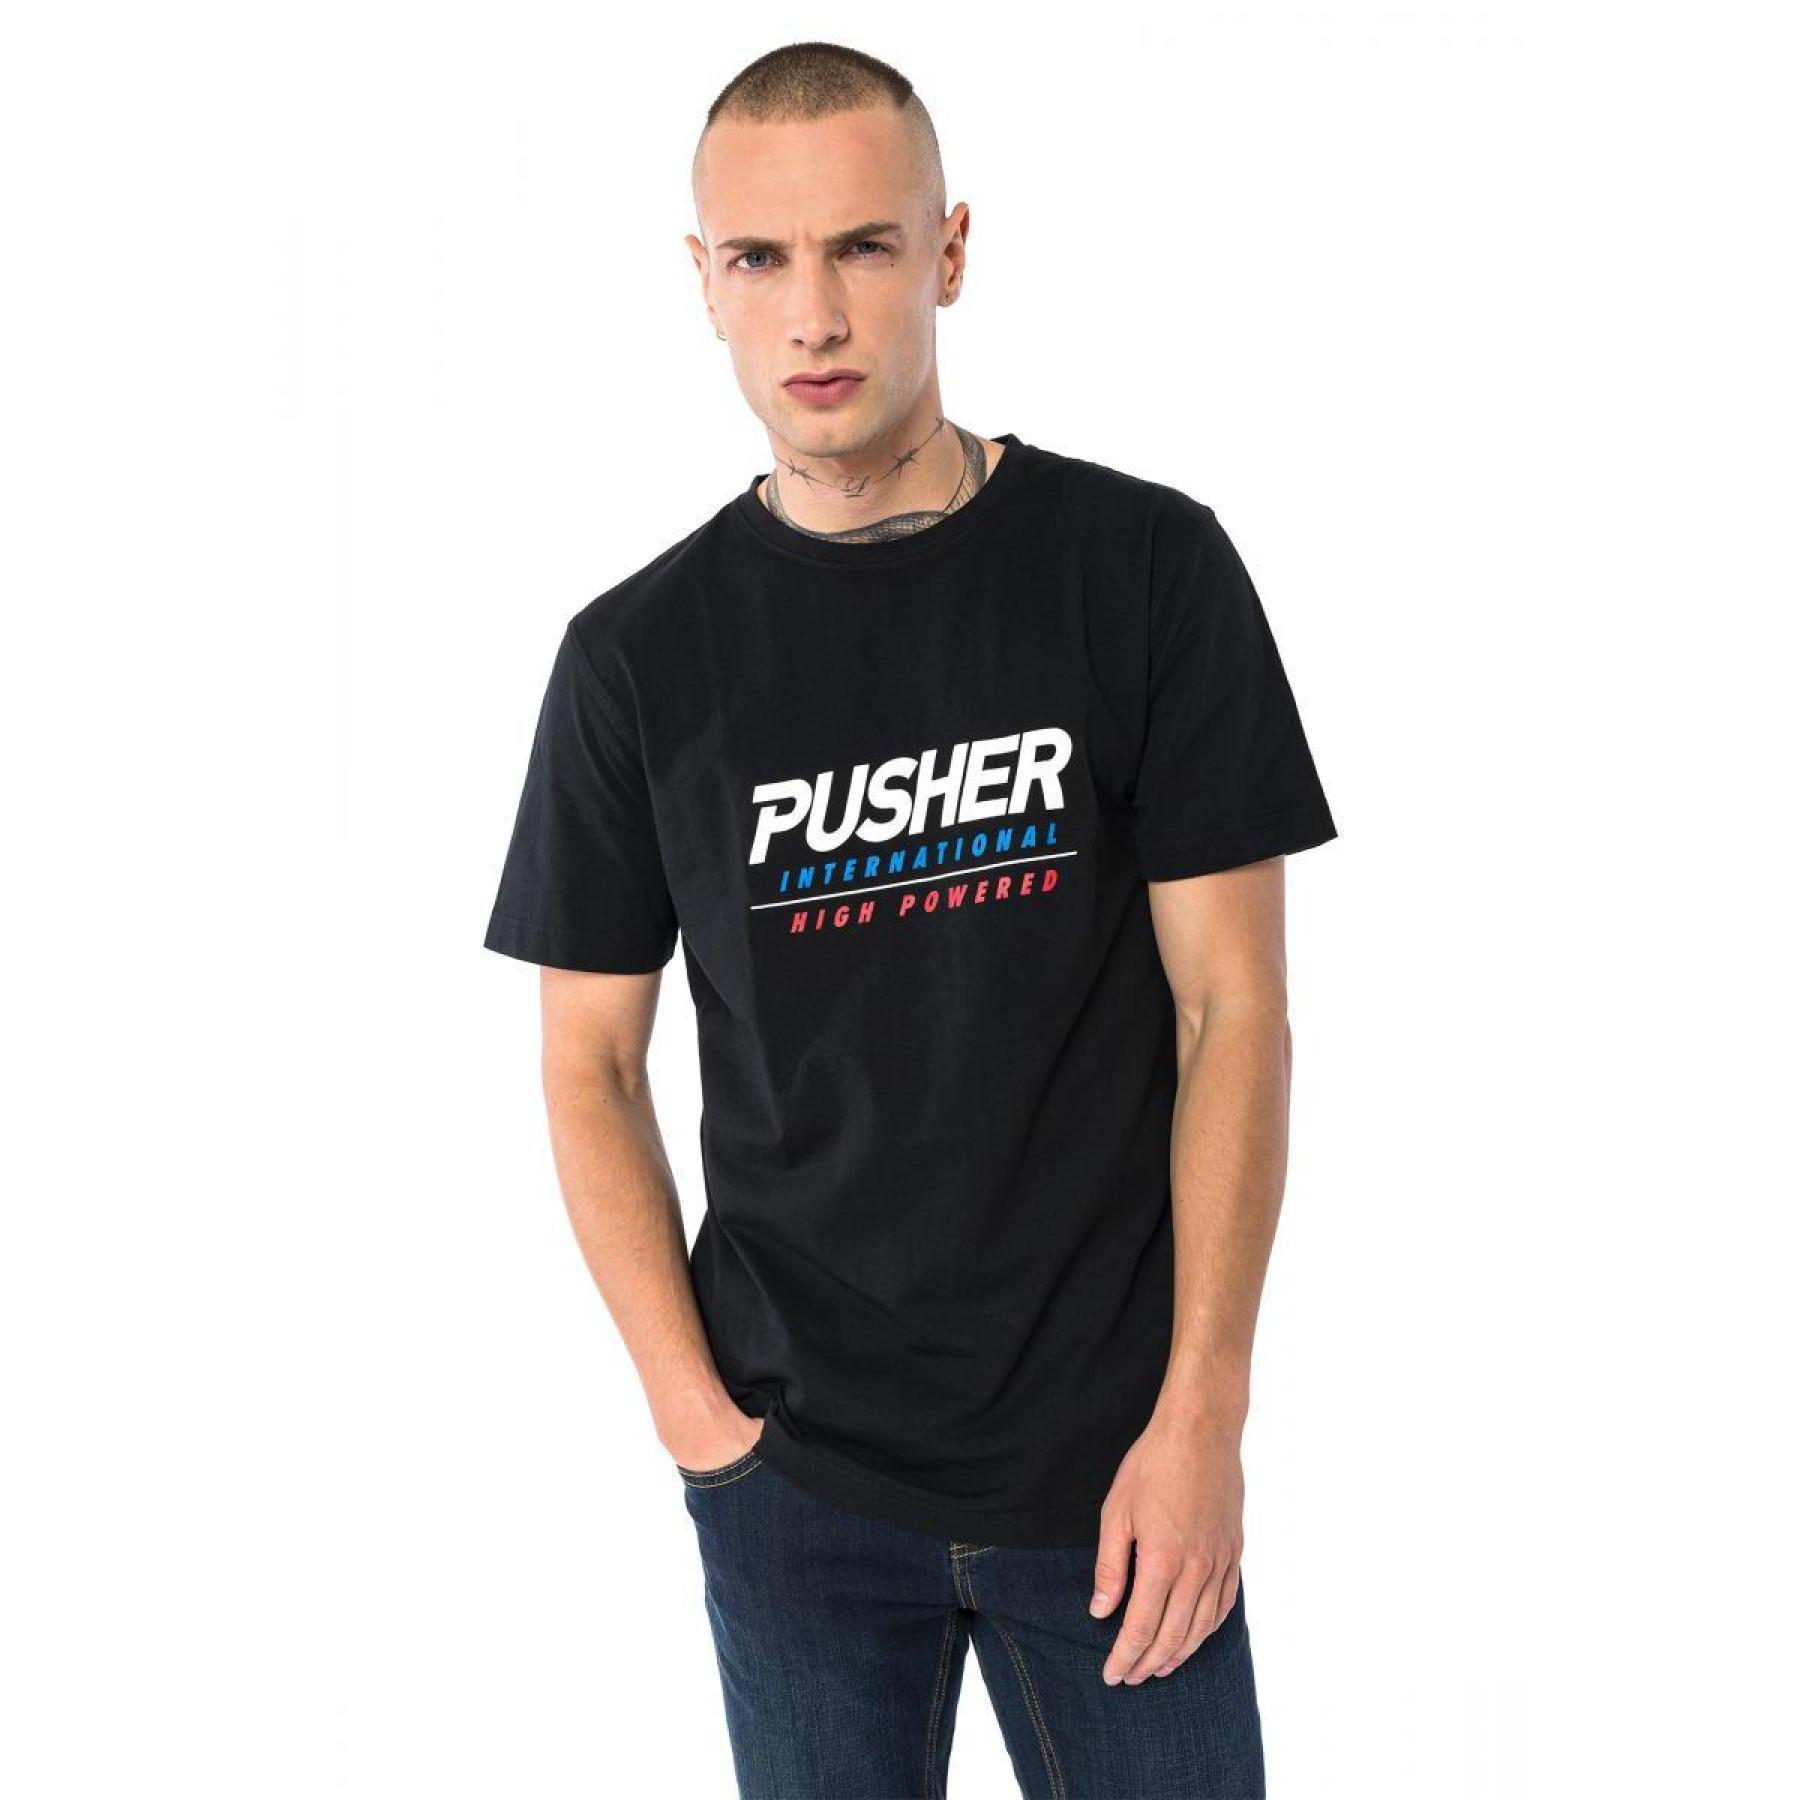 Koszulka Pusher powered